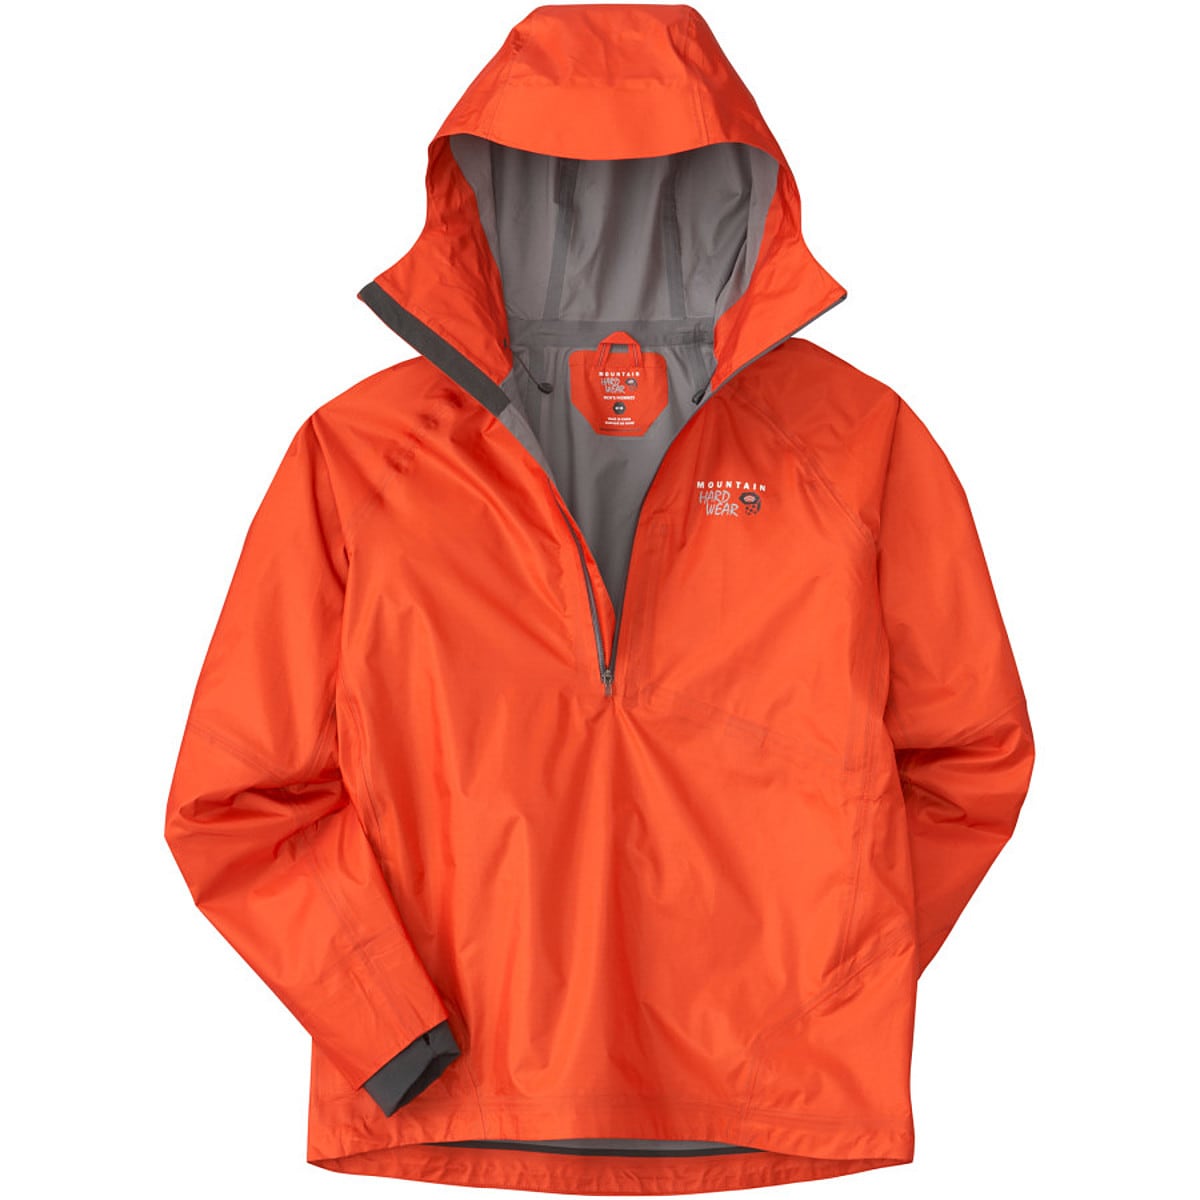 Mountain Hardwear Quasar Pullover Jacket - Men's - Clothing